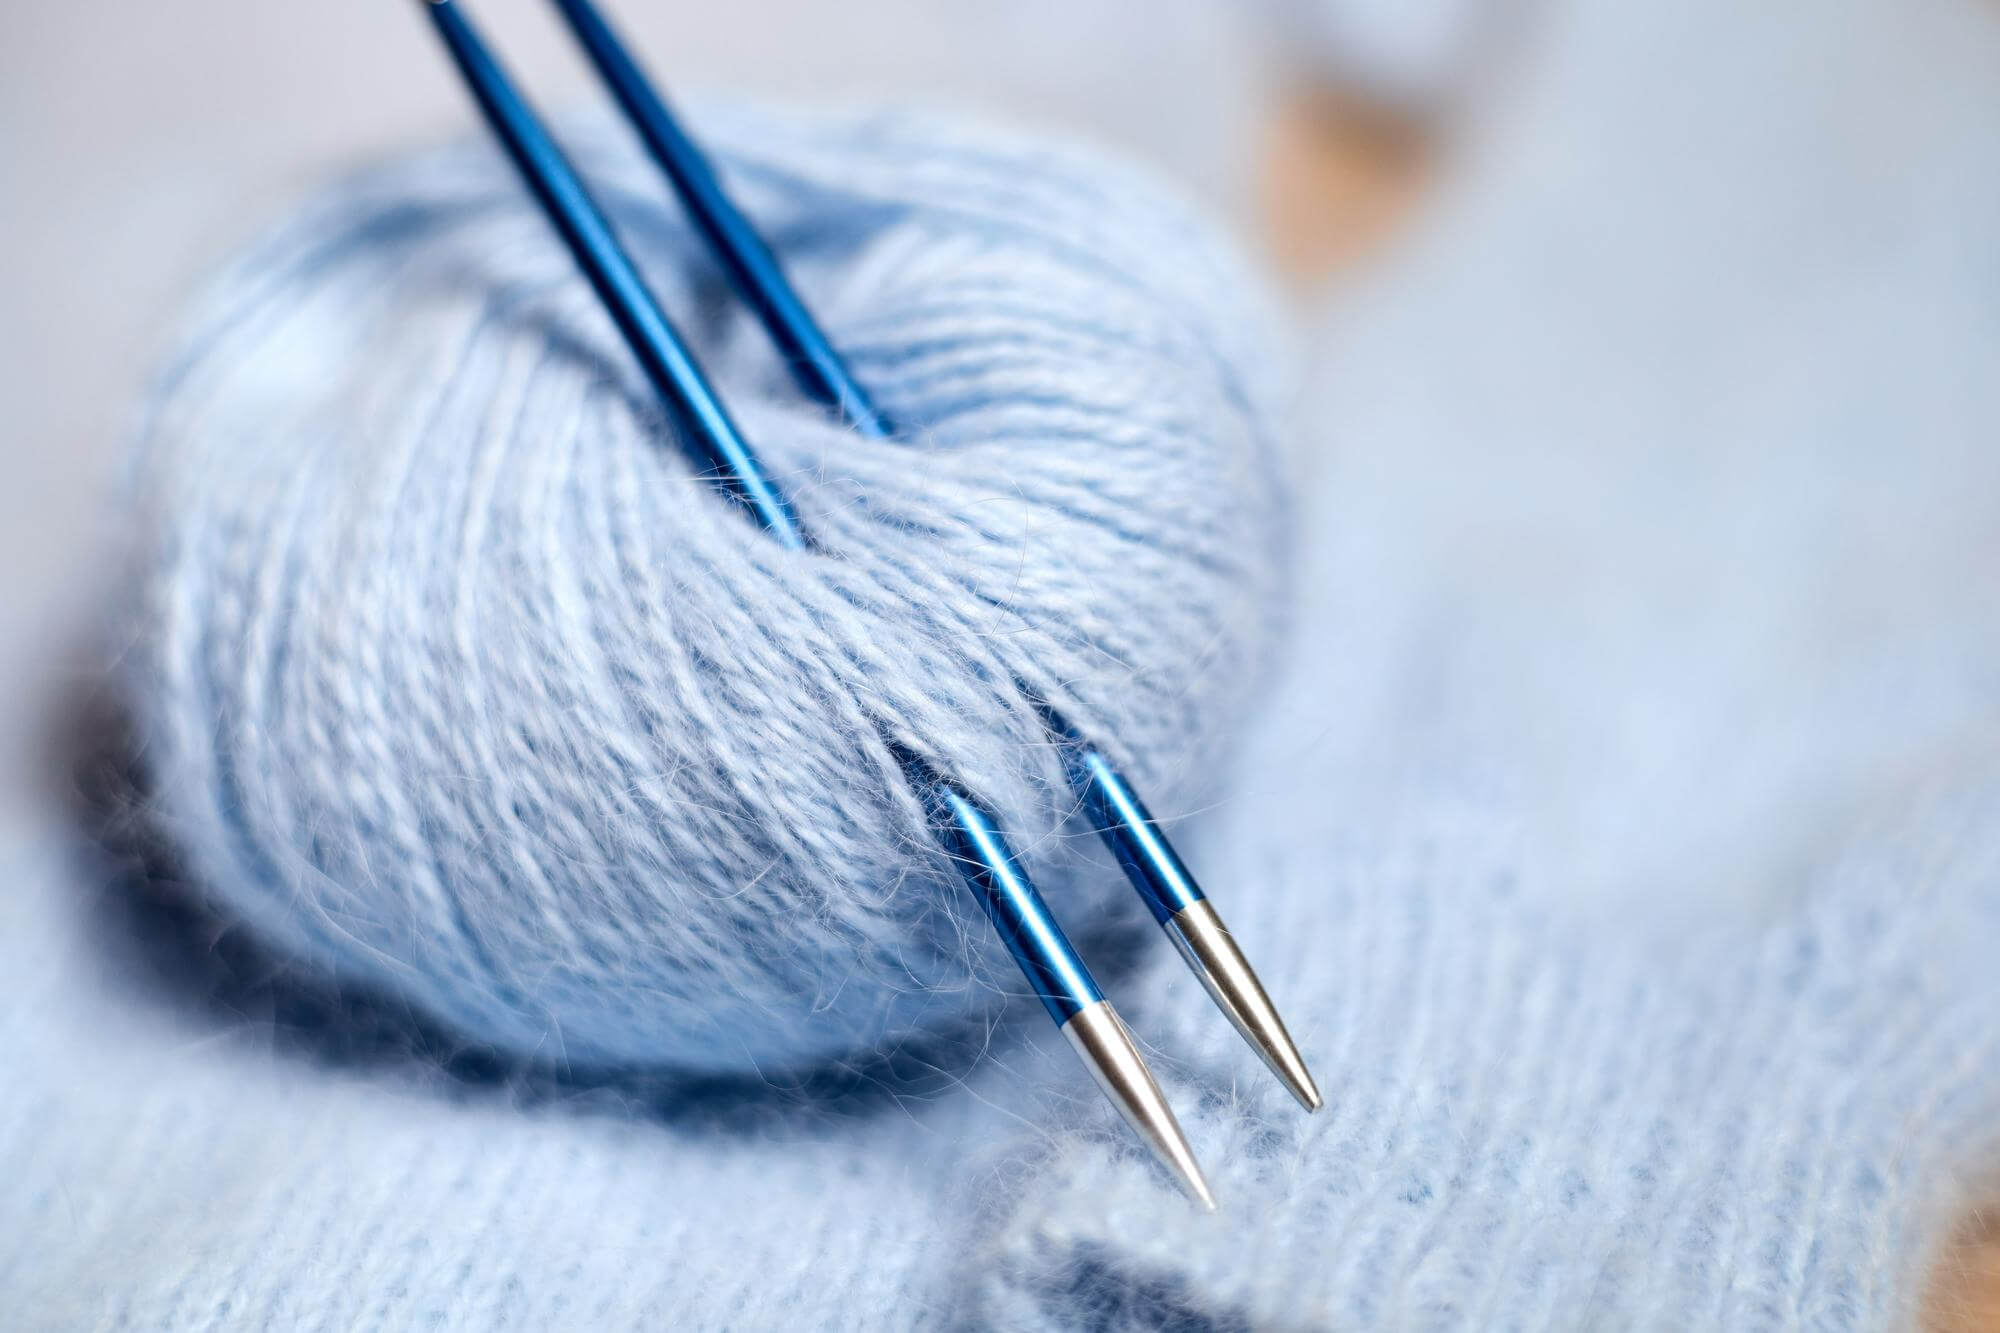 Metal knitting needles